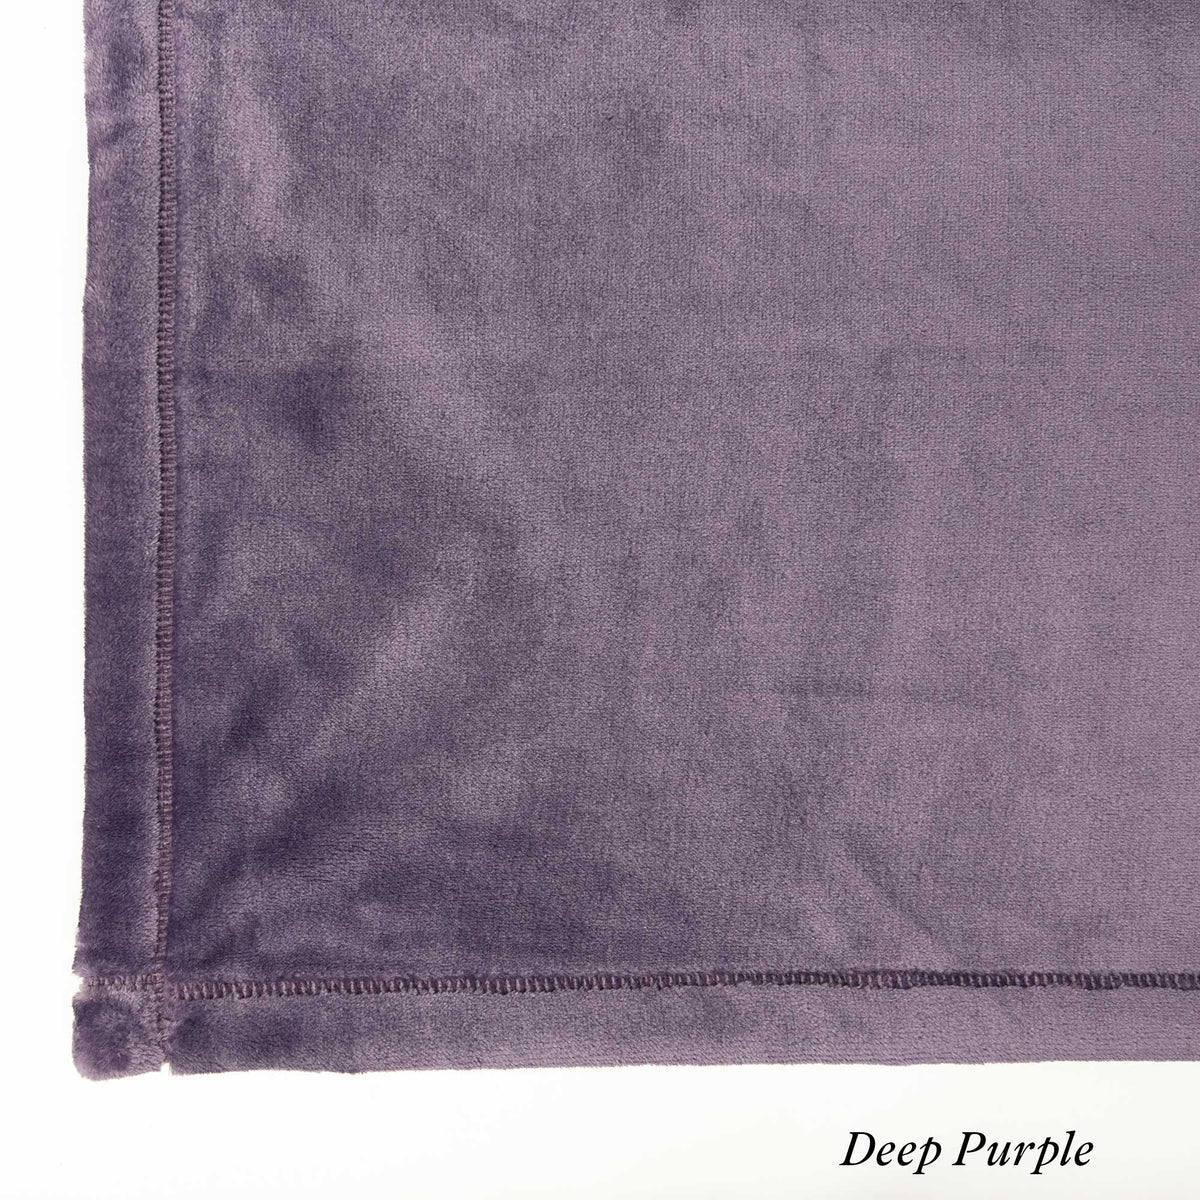 Deep Purple Luster Loft Fleece Swatch - Luster Loft Fleece Blankets - Luster Loft Fleece Throws - American Blanket Company 